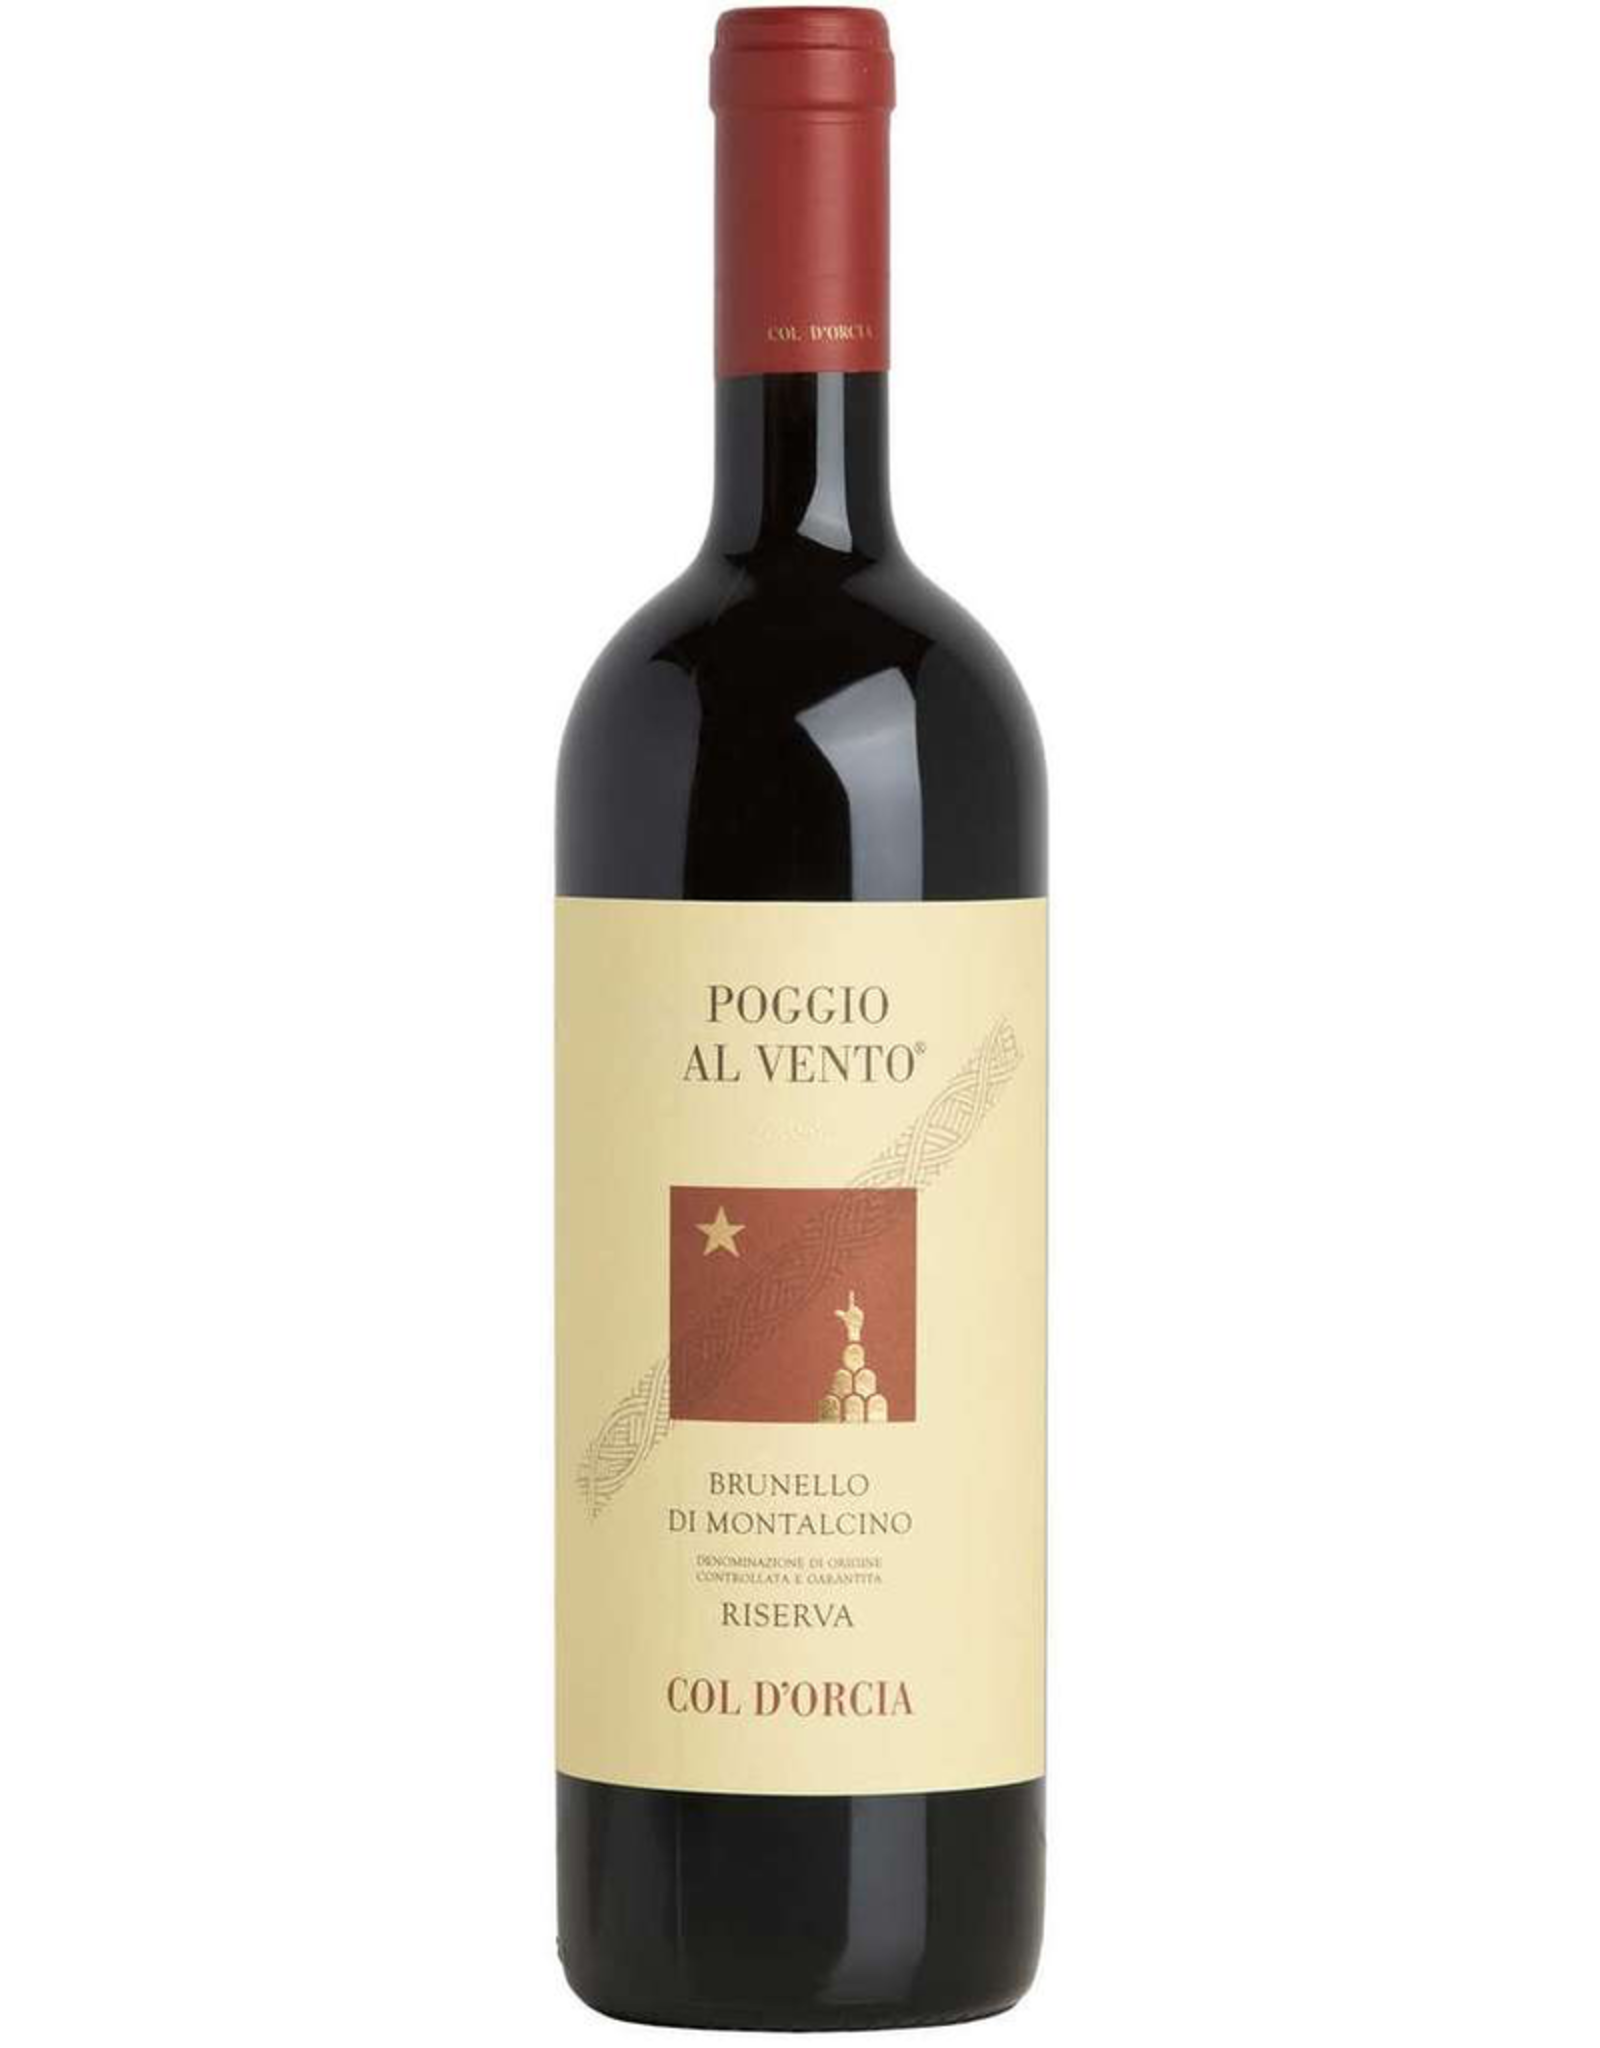 Red Wine 2007, Tenuta Col D'Orcia “Poggio al Vento” Brunello di Montalcino Riserva, Sangiovese, Montalcino, Tuscany, Italy, 14.5% Alc, CT92.7 RP96